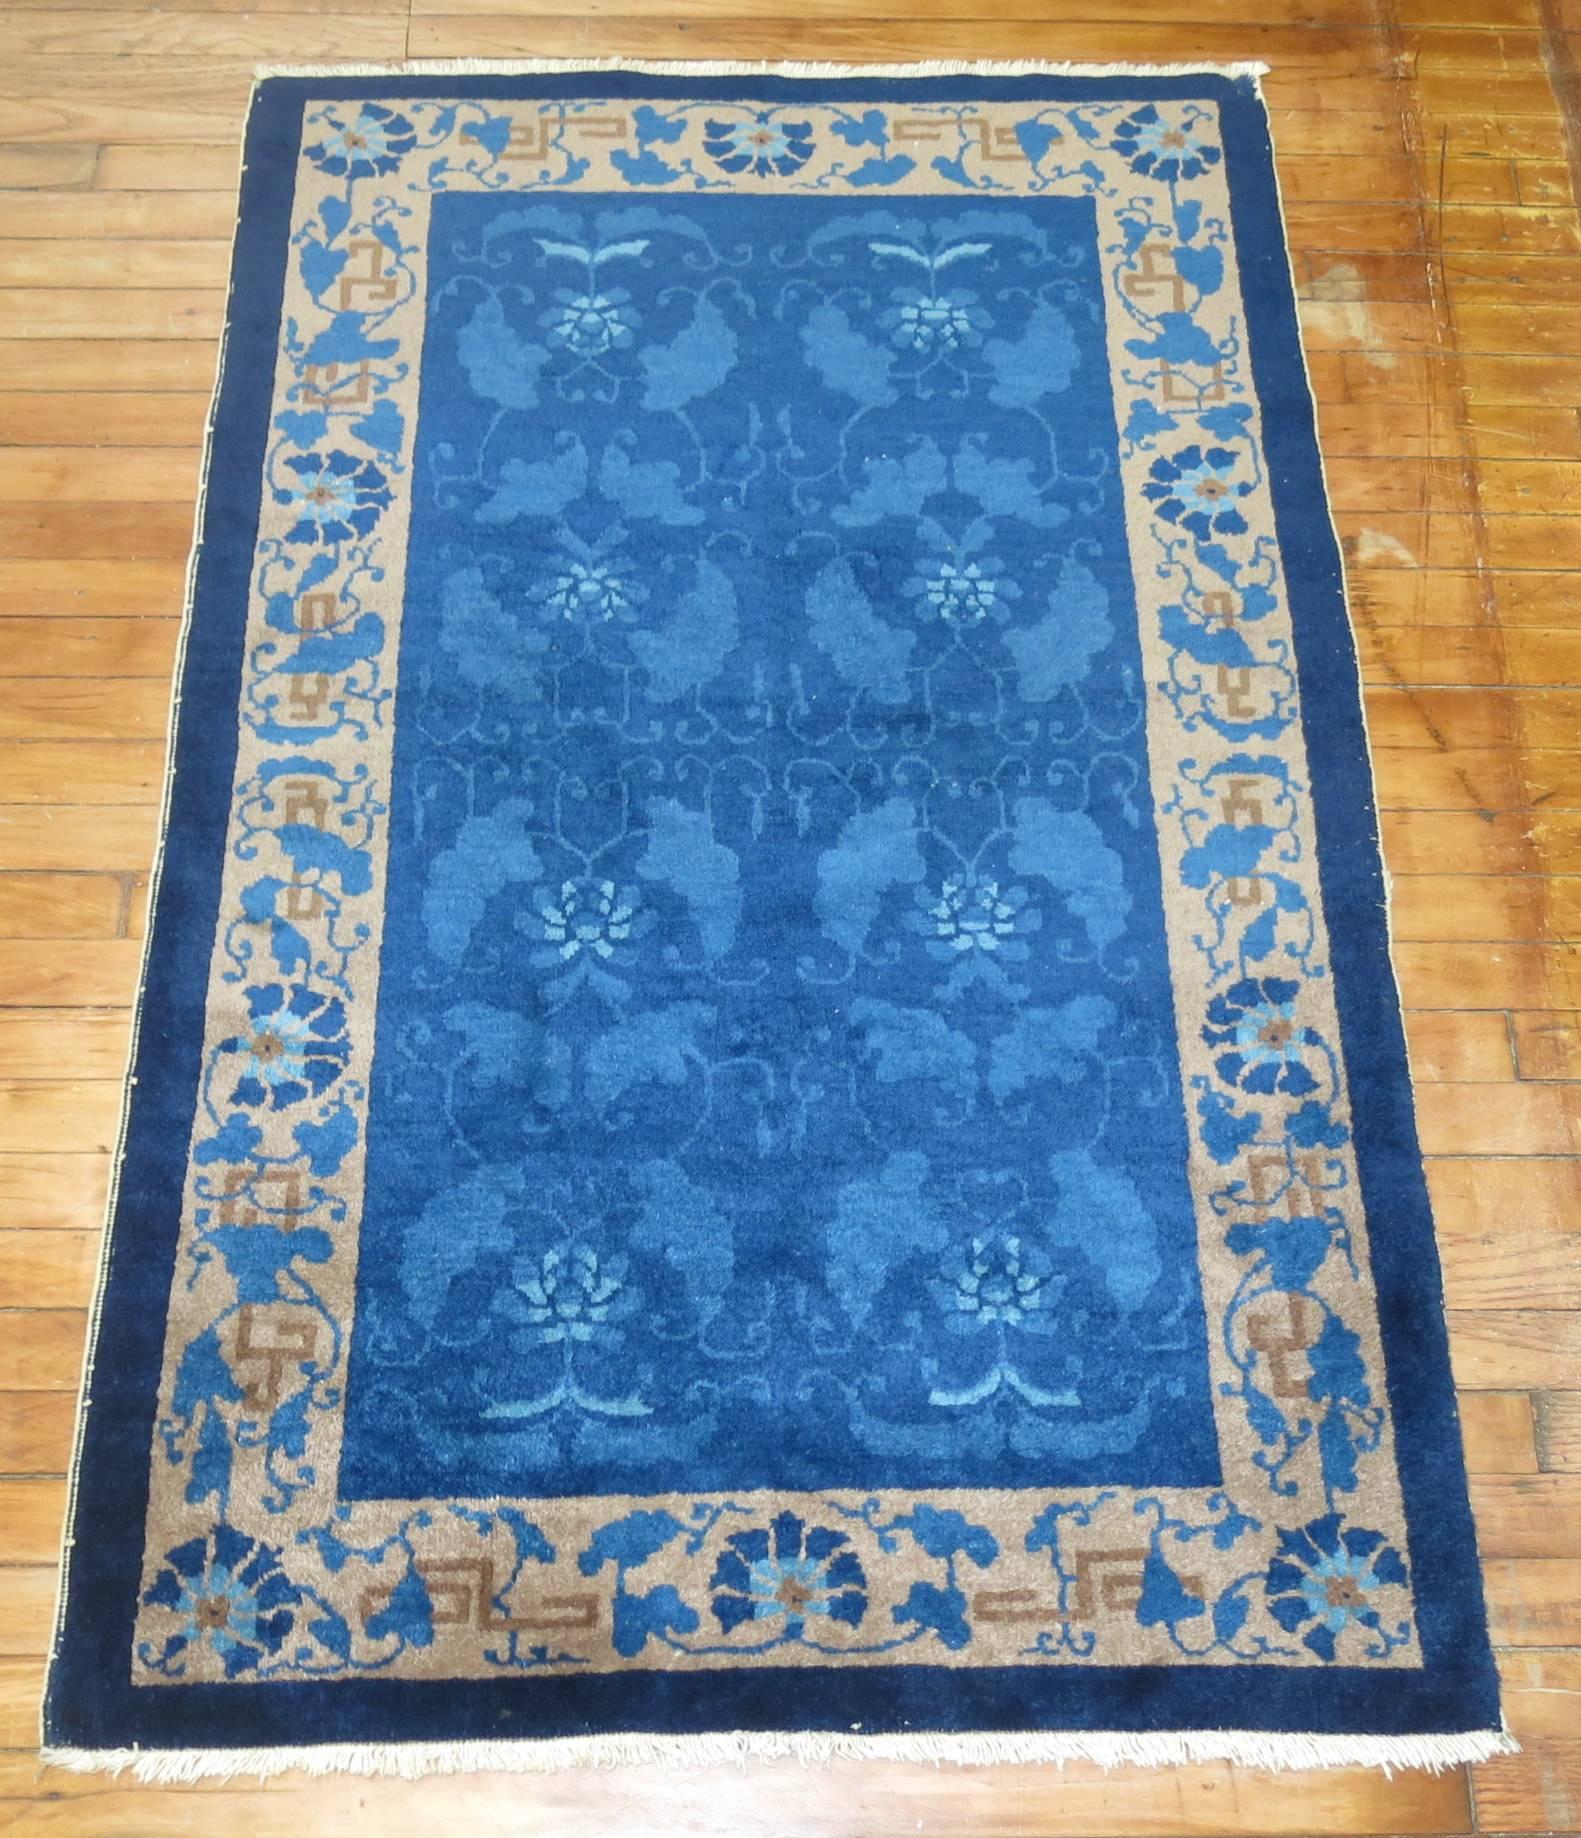 Charming Chinese Peking throw size rug.